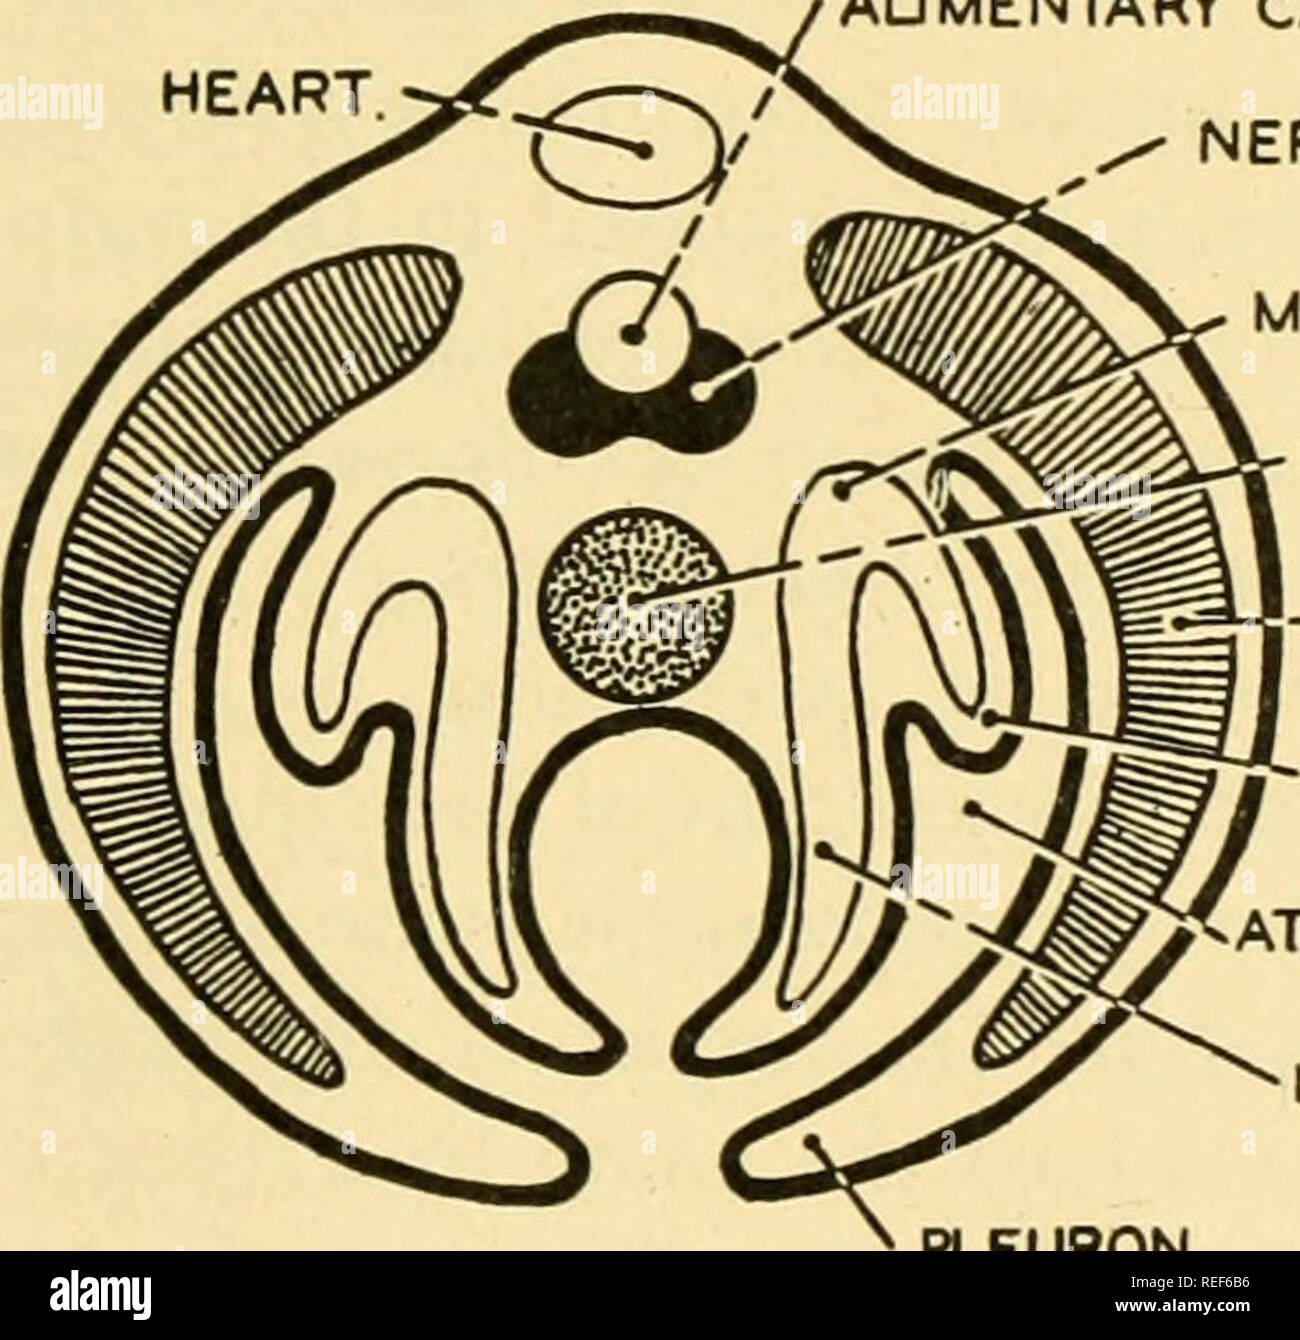 . La anatomía comparativa. Anatomía Comparativa. ^NOTOCHORDAL GROOVE. NOTOCHORD. CANAL AUMENTARY, corazón. Grasa corporal. Sistema nervioso MESONEPHROS NOTOCHORD -MYOTOME REDECILLA CÁMARA ATRIAL METACOELE PLEURON. c Fig. 527.-Un diagrama que ilustra cómo un animal similar al trilobites (.4) podría convertirse en un pájaro (D). B y C son hipotéticas etapas transicionales entre A y D. Todas las cifras que representan secciones transversales. Desde Gaskell la teoría del origen de los vertebrados se supone que el intestino de artrópodos se ha convertido en el revestimiento del cerebro y la médula espinal de los vertebrados, un nuevo canal alimenticio y una notochord Foto de stock